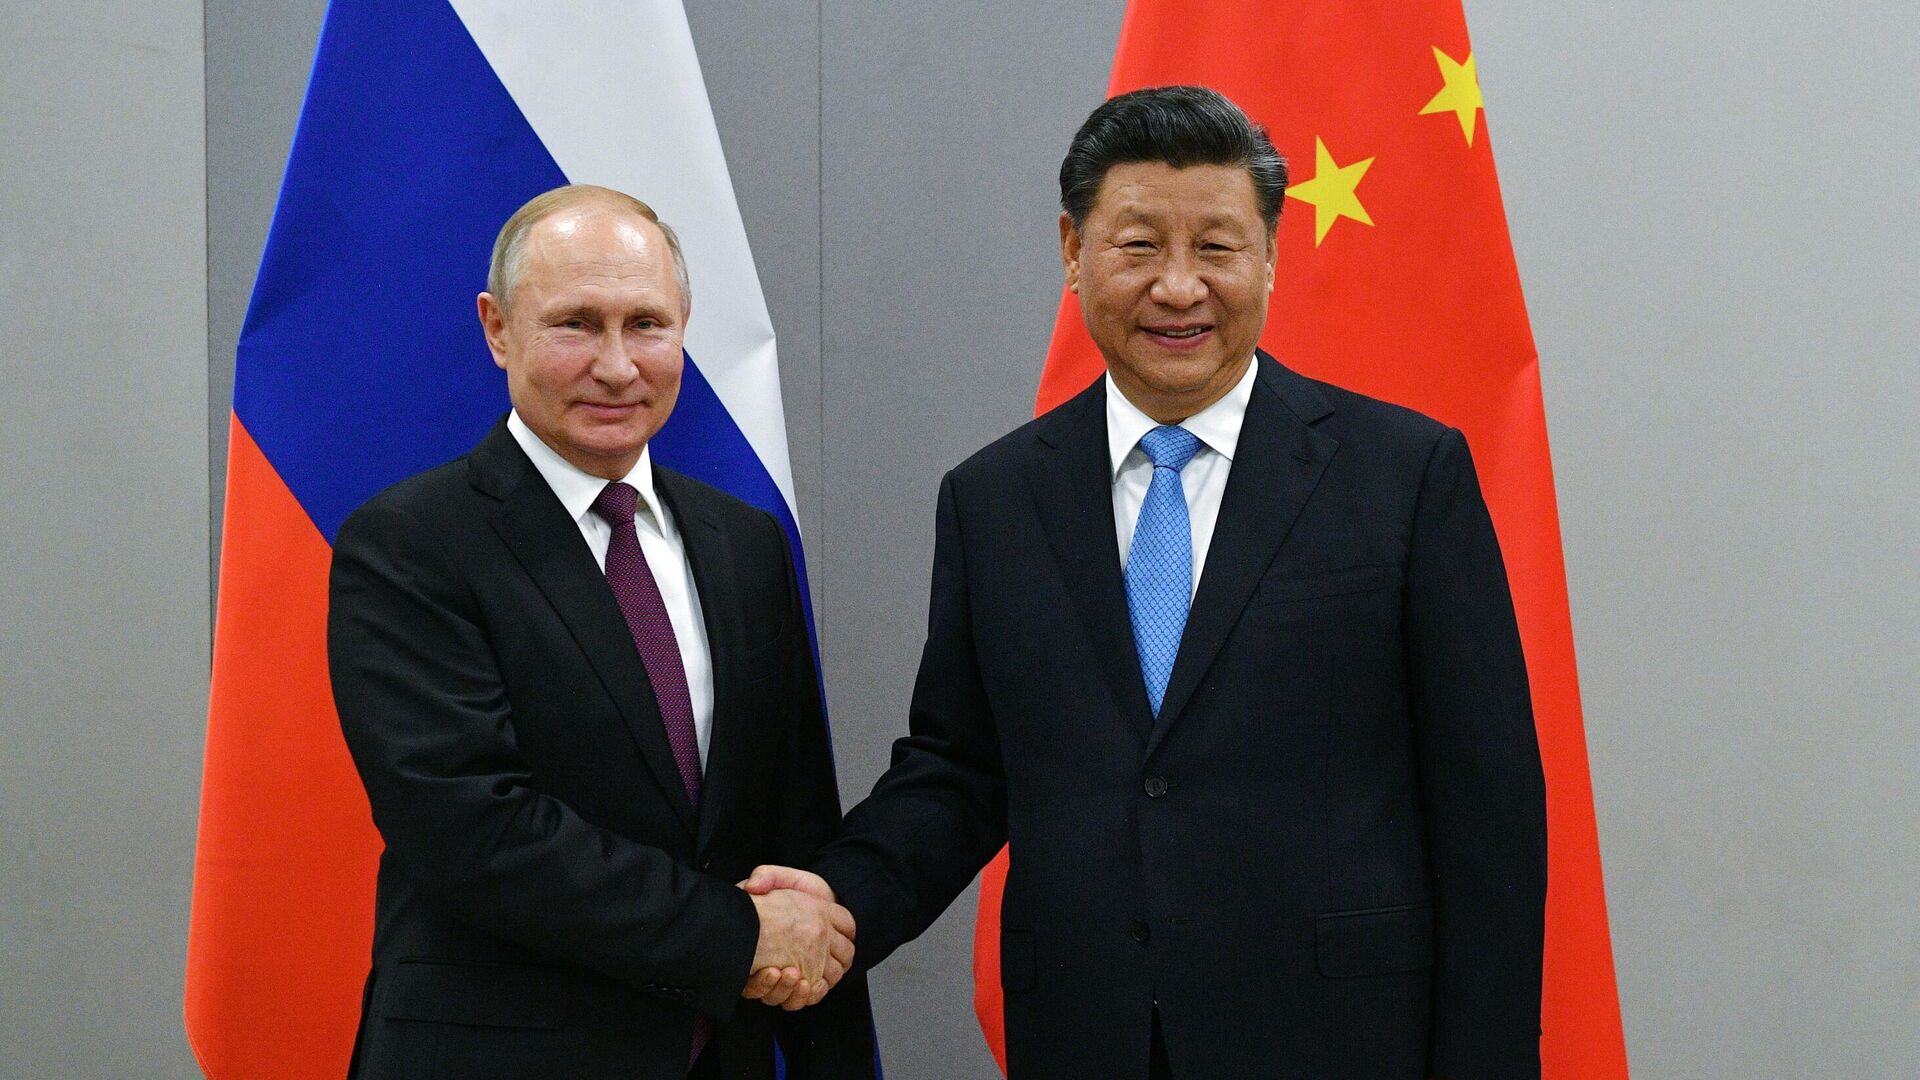 Визит Путина отражает общий курс России и Китая на построение многополярного мира – китайский политолог